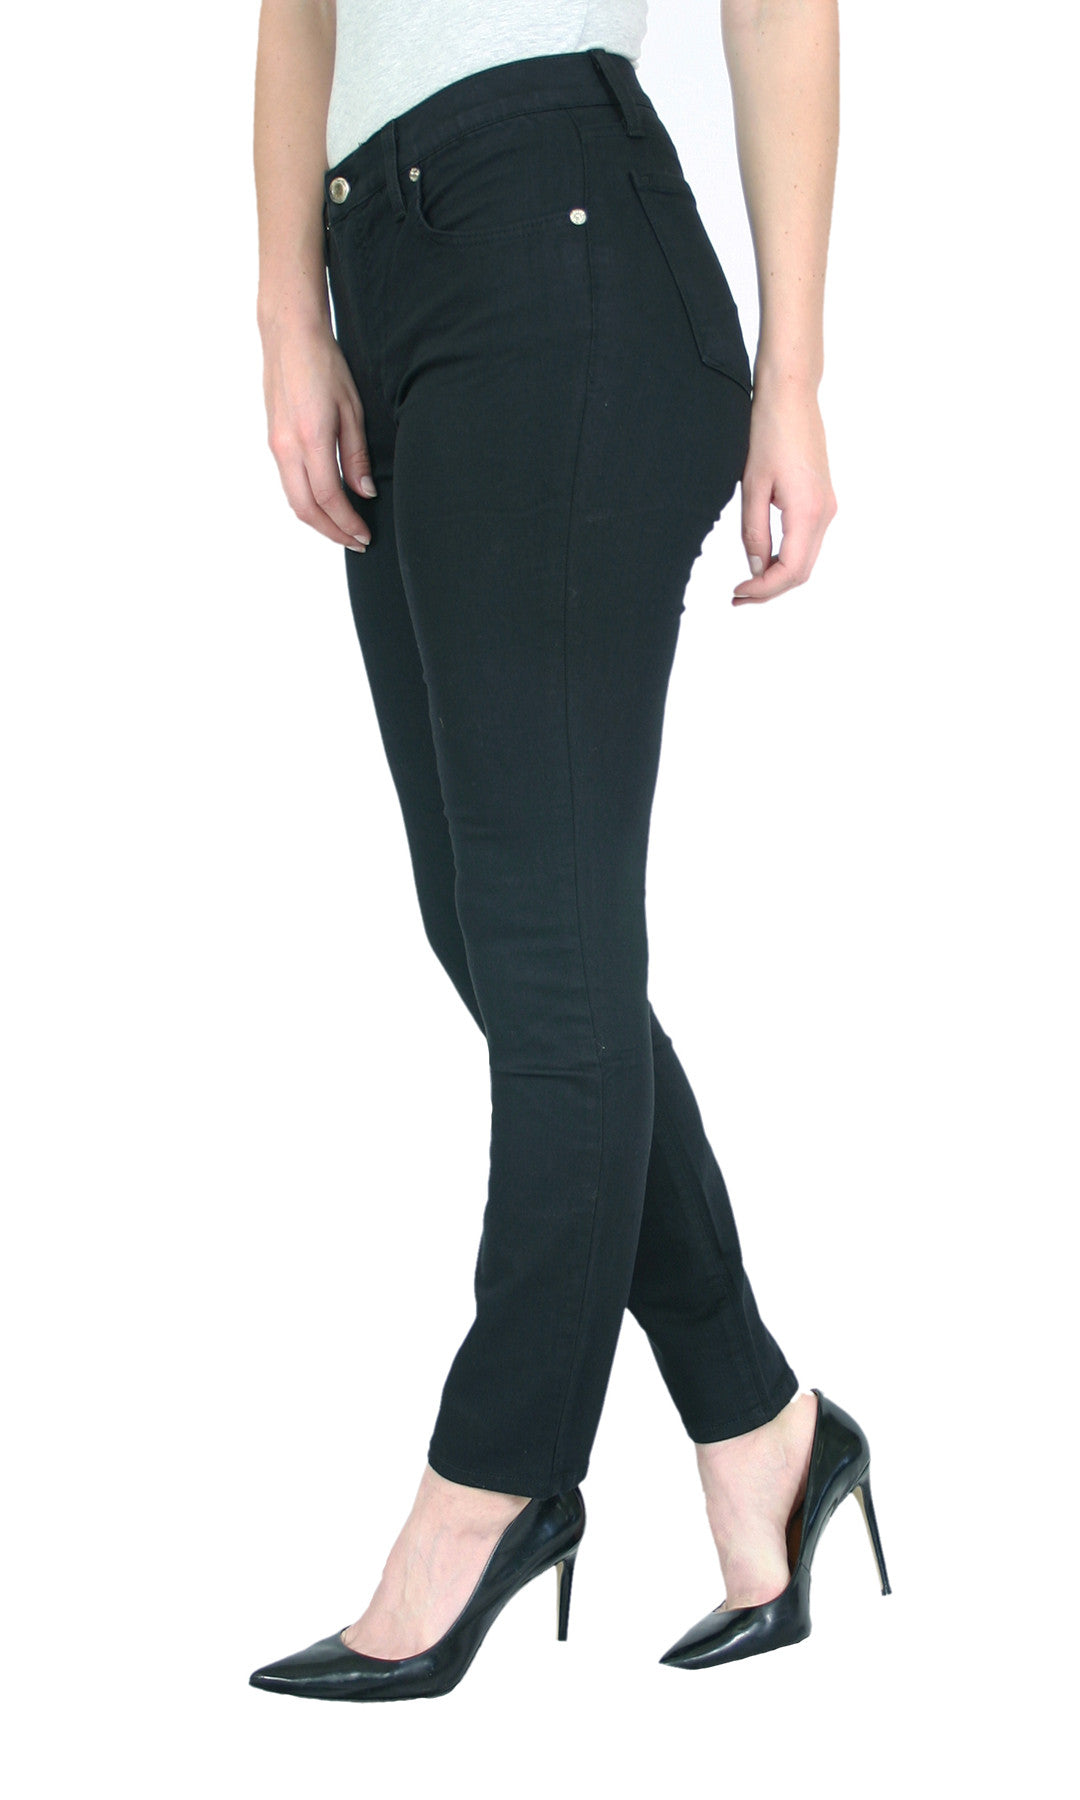 TrueSlim™ Women's Black Jeans – TrueSlim Jeans